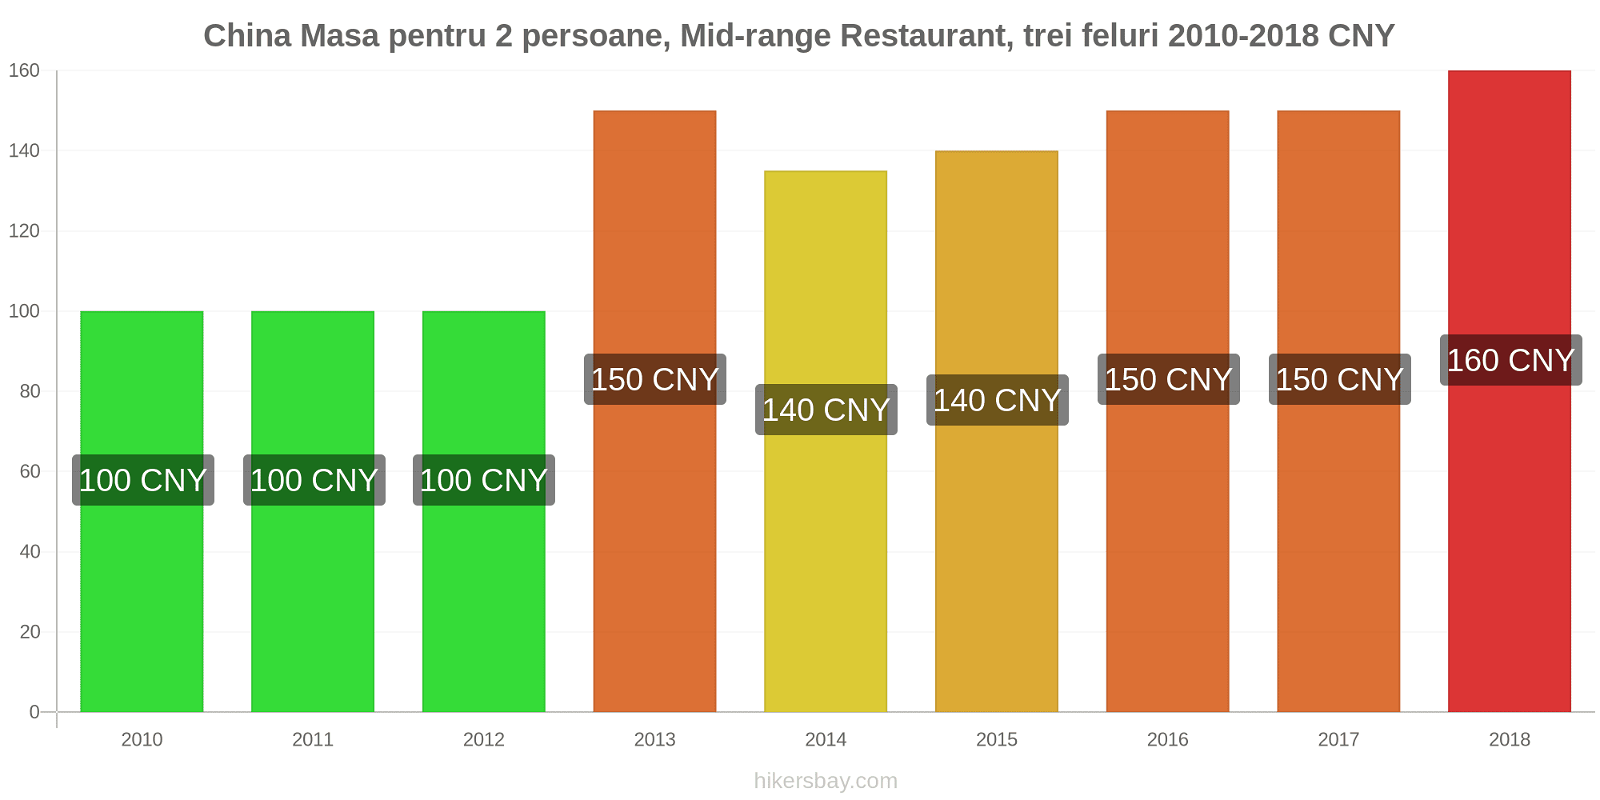 China schimbări de prețuri Masă pentru 2 persoane, restaurant de gamă medie, trei feluri de mâncare hikersbay.com